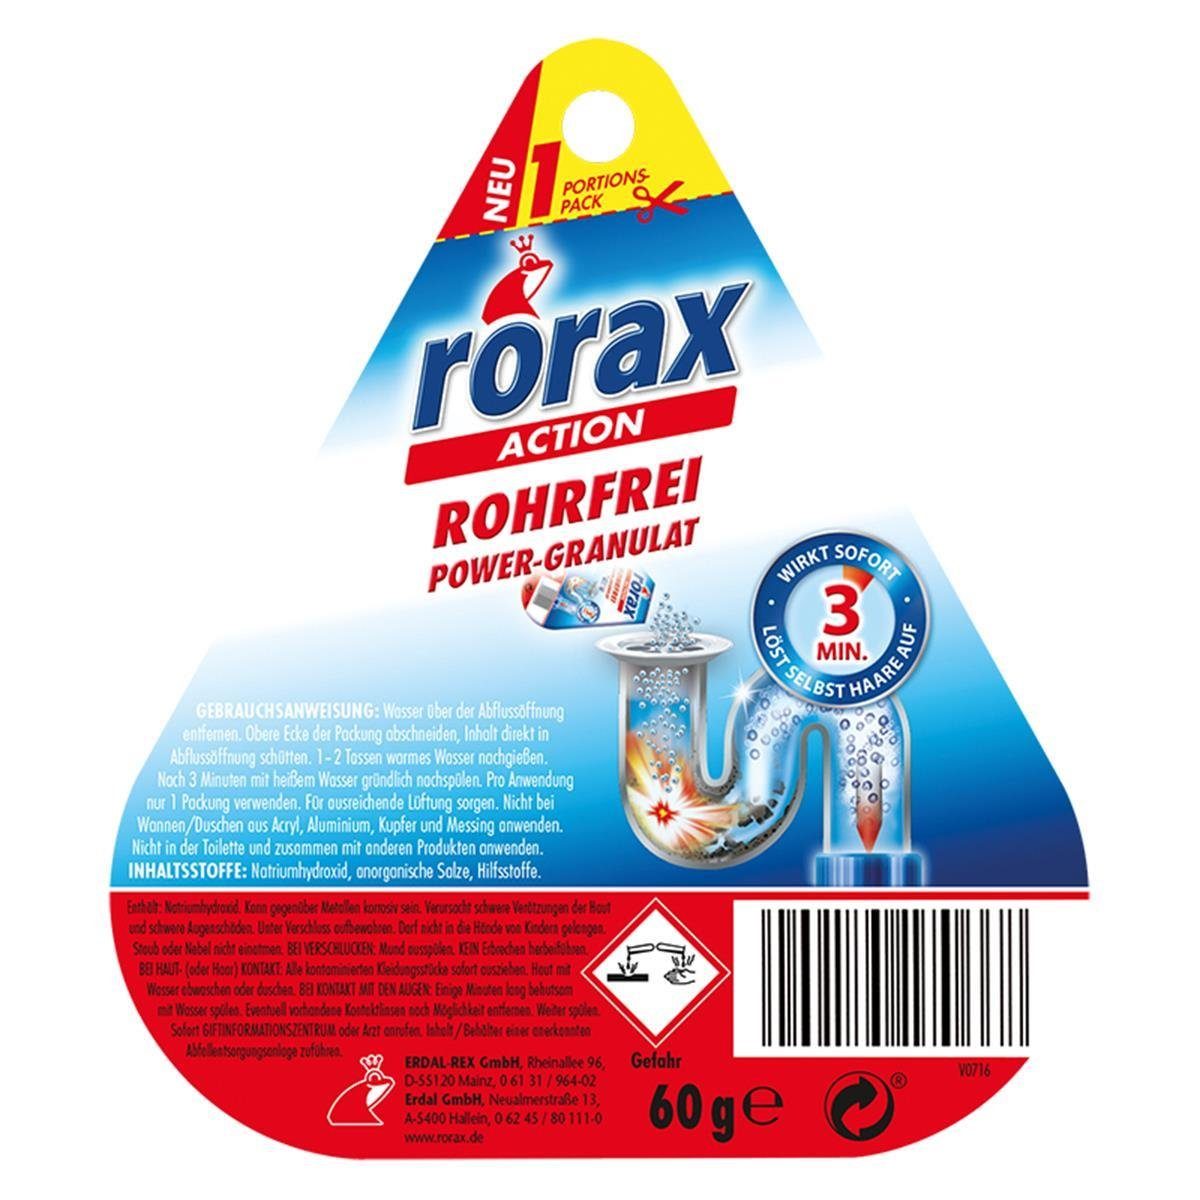 rorax rorax Rohrfrei Power-Granulat Portionspack Wirkt - s 60g & Rohrreiniger löst sofort